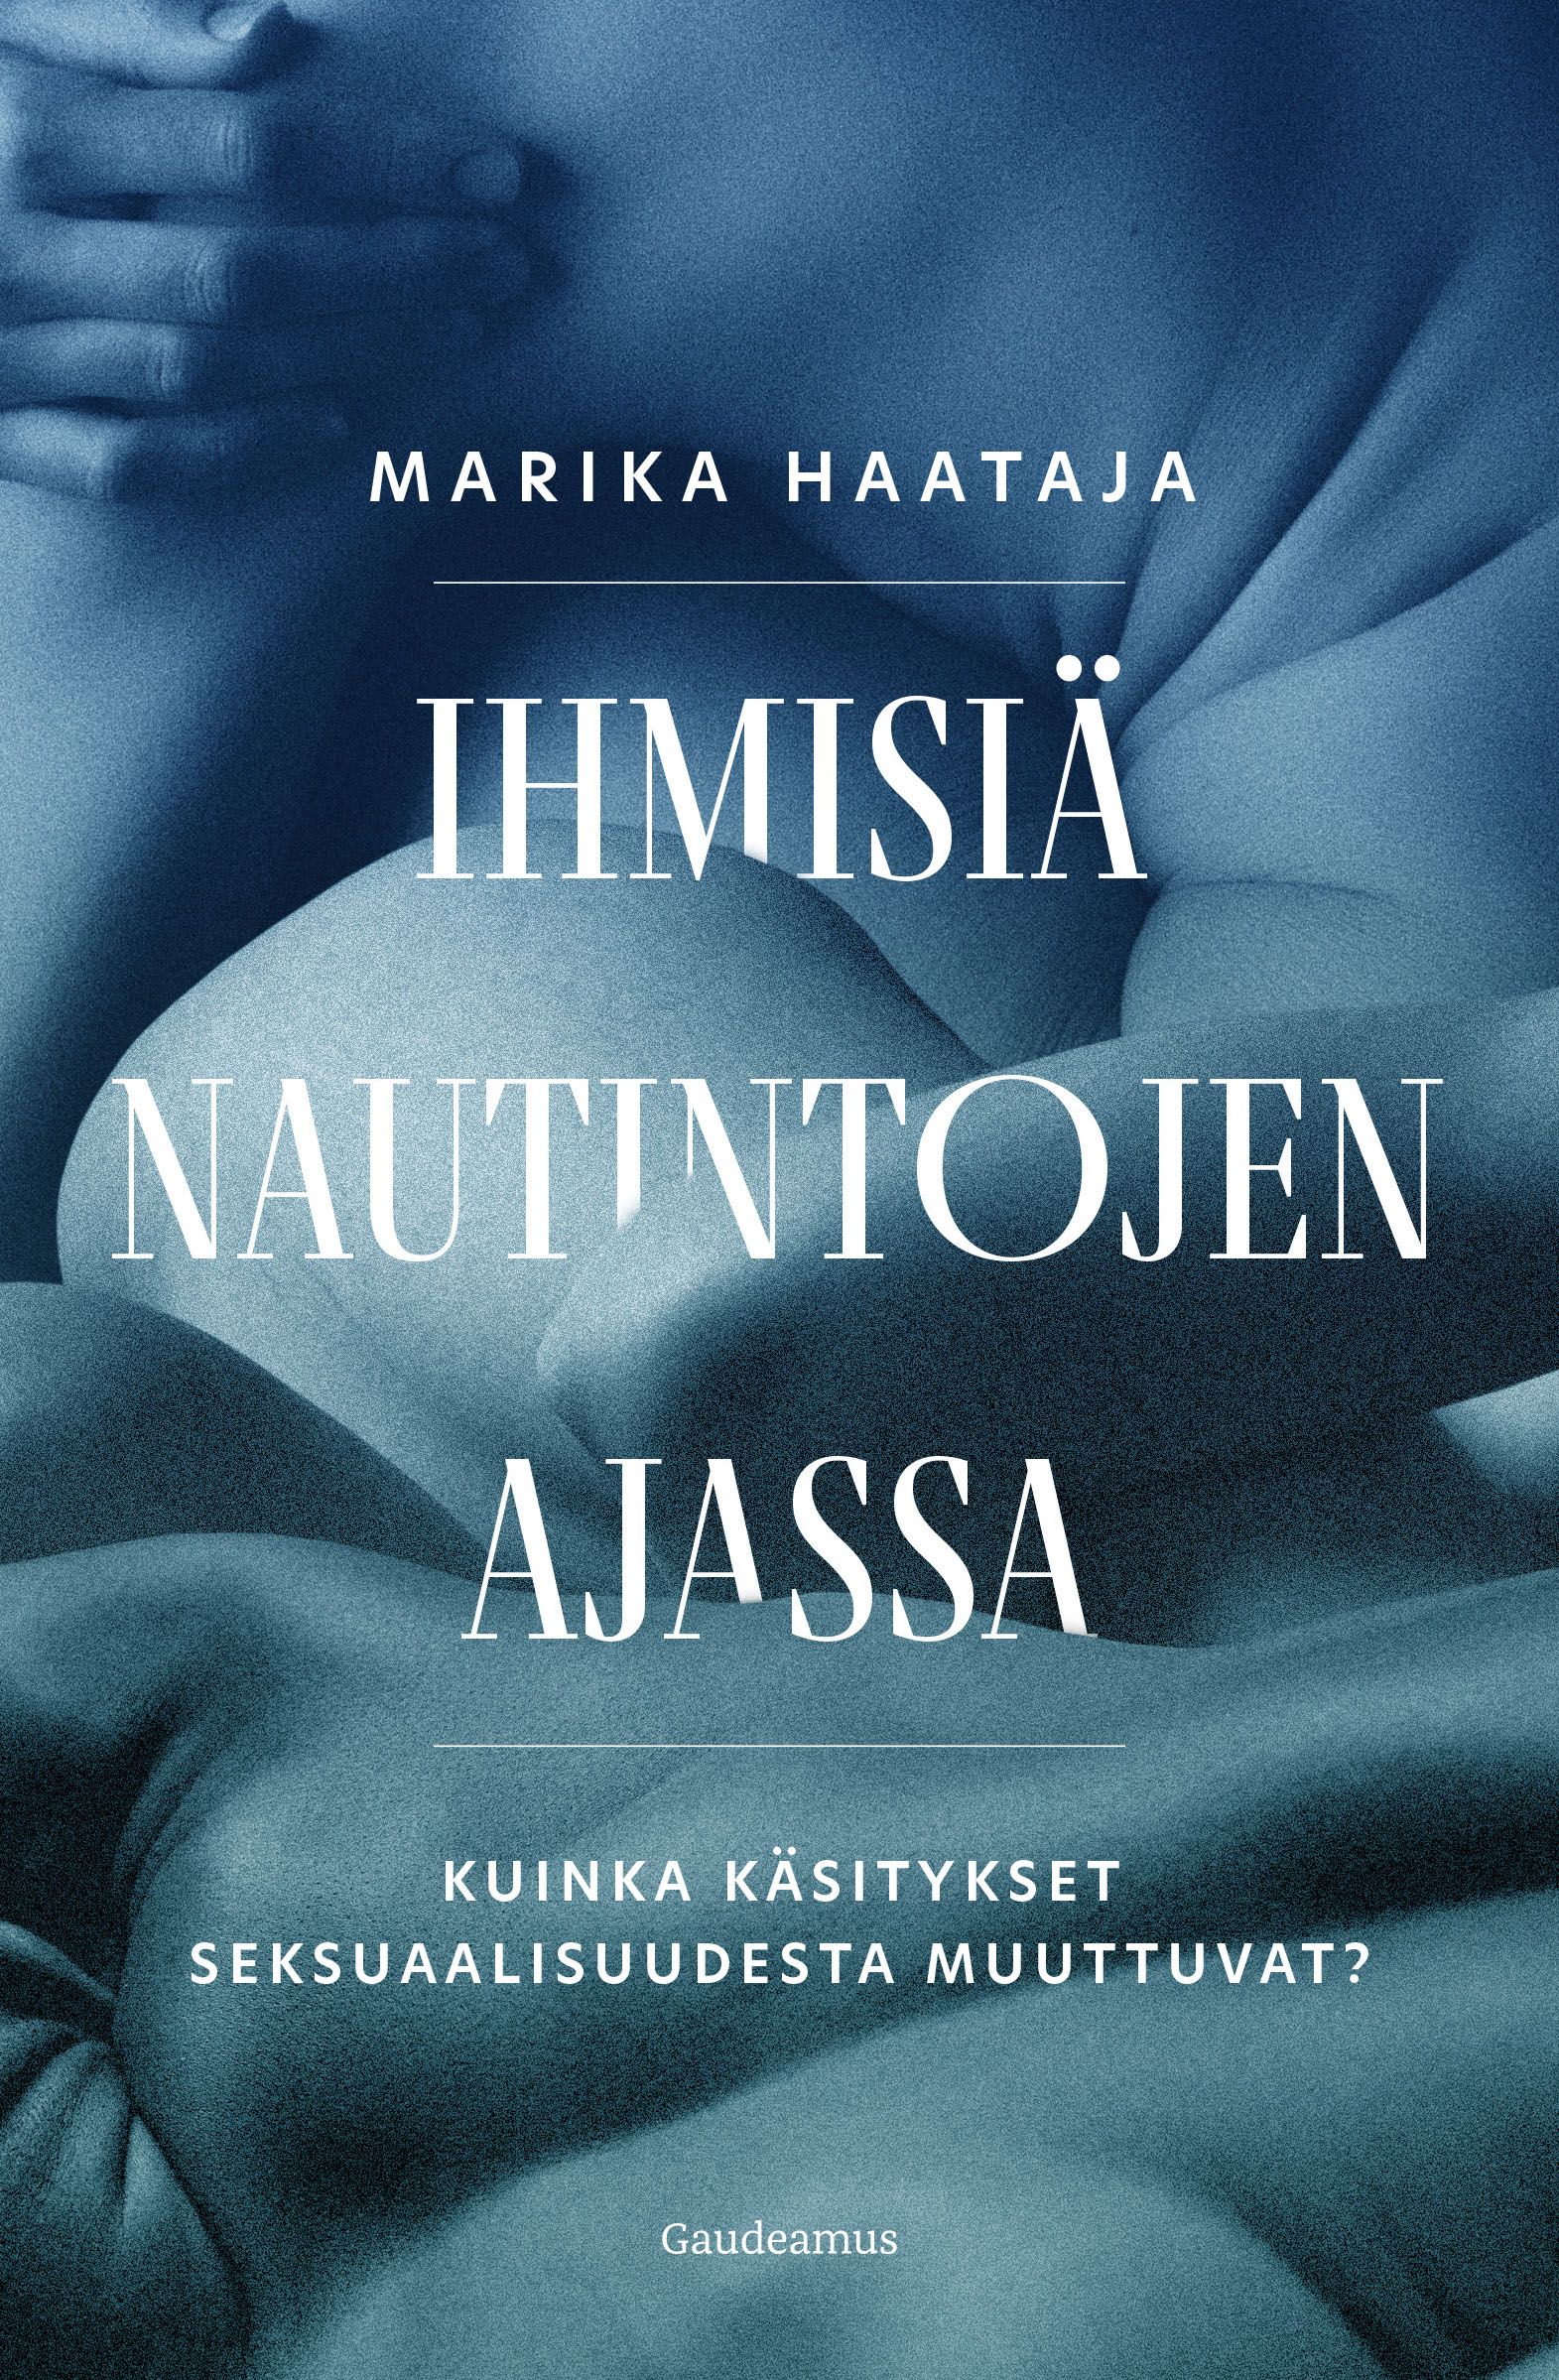 Kirjailijan Marika Haataja uusi kirja Ihmisiä nautintojen ajassa : kuinka käsitykset seksuaalisuudesta muuttuvat? (UUSI)